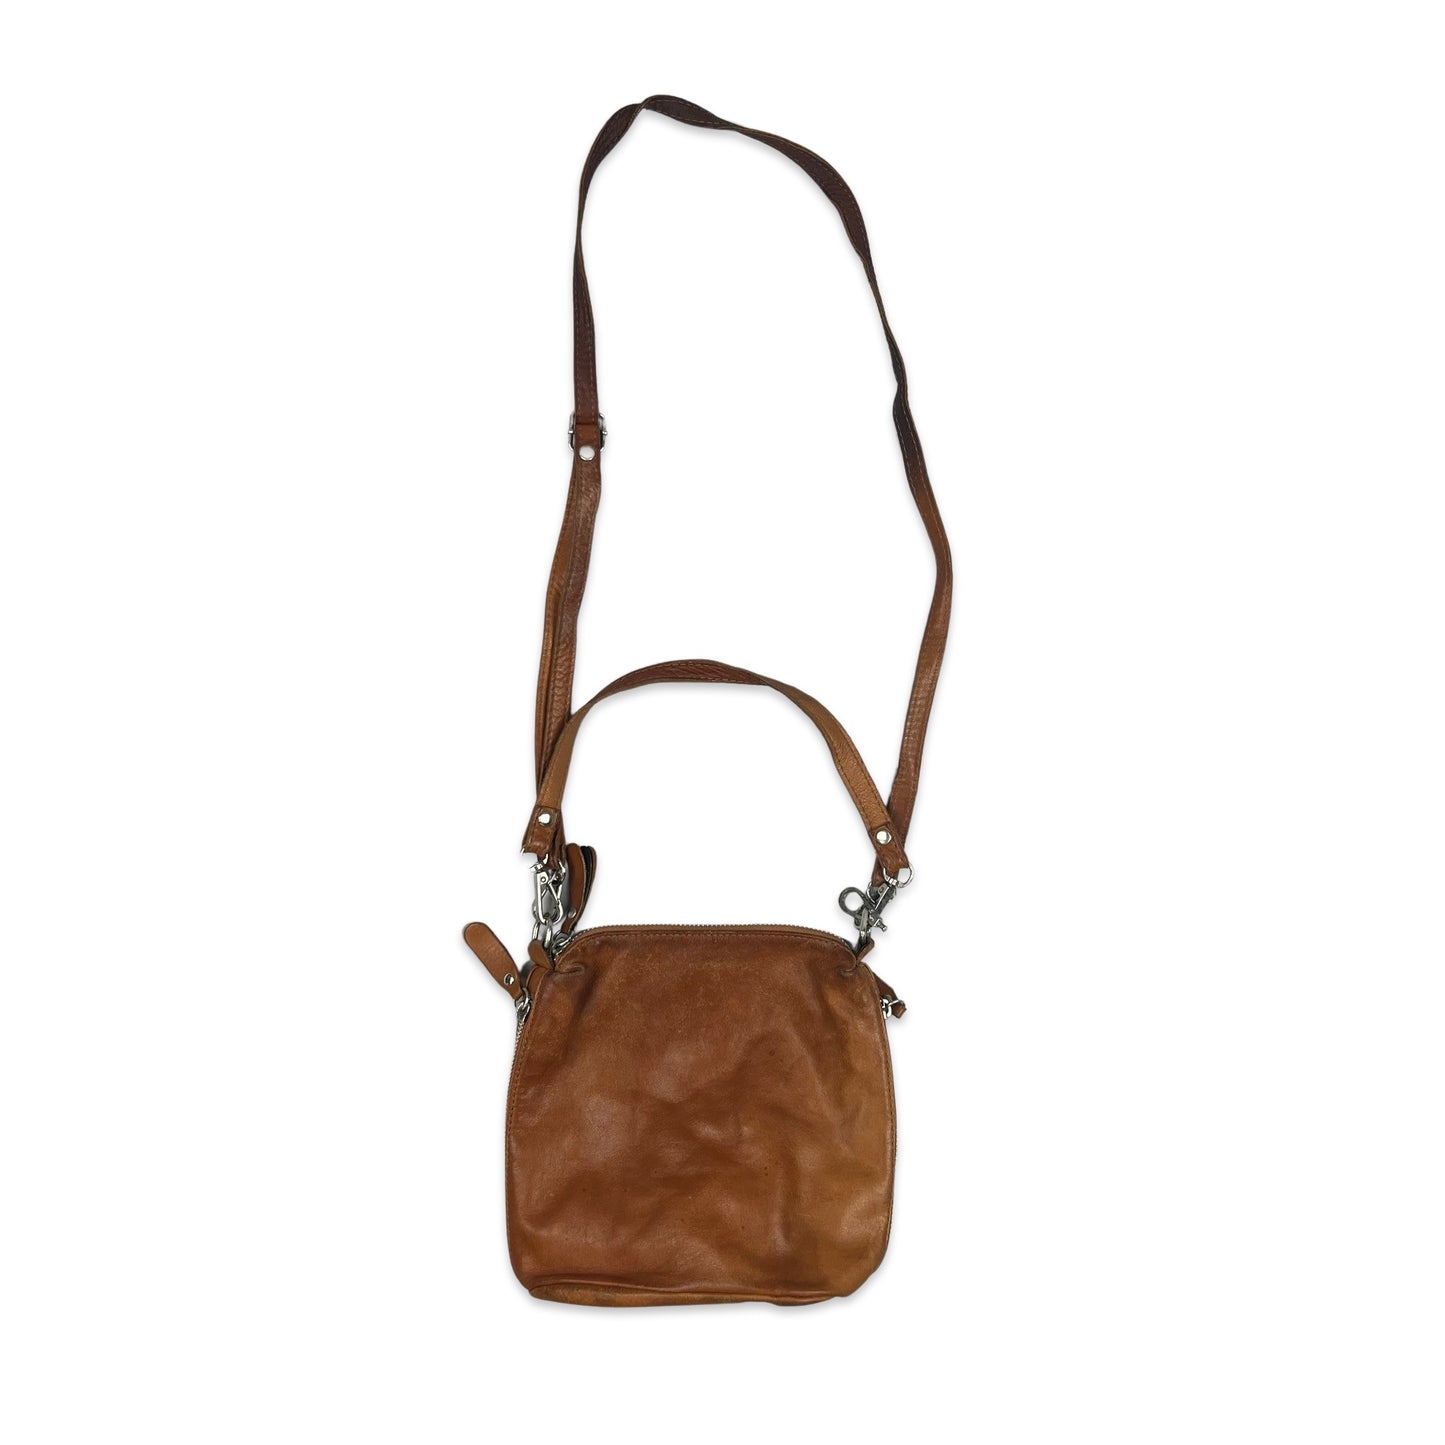 Vintage Tan Leather Bucket Handbag